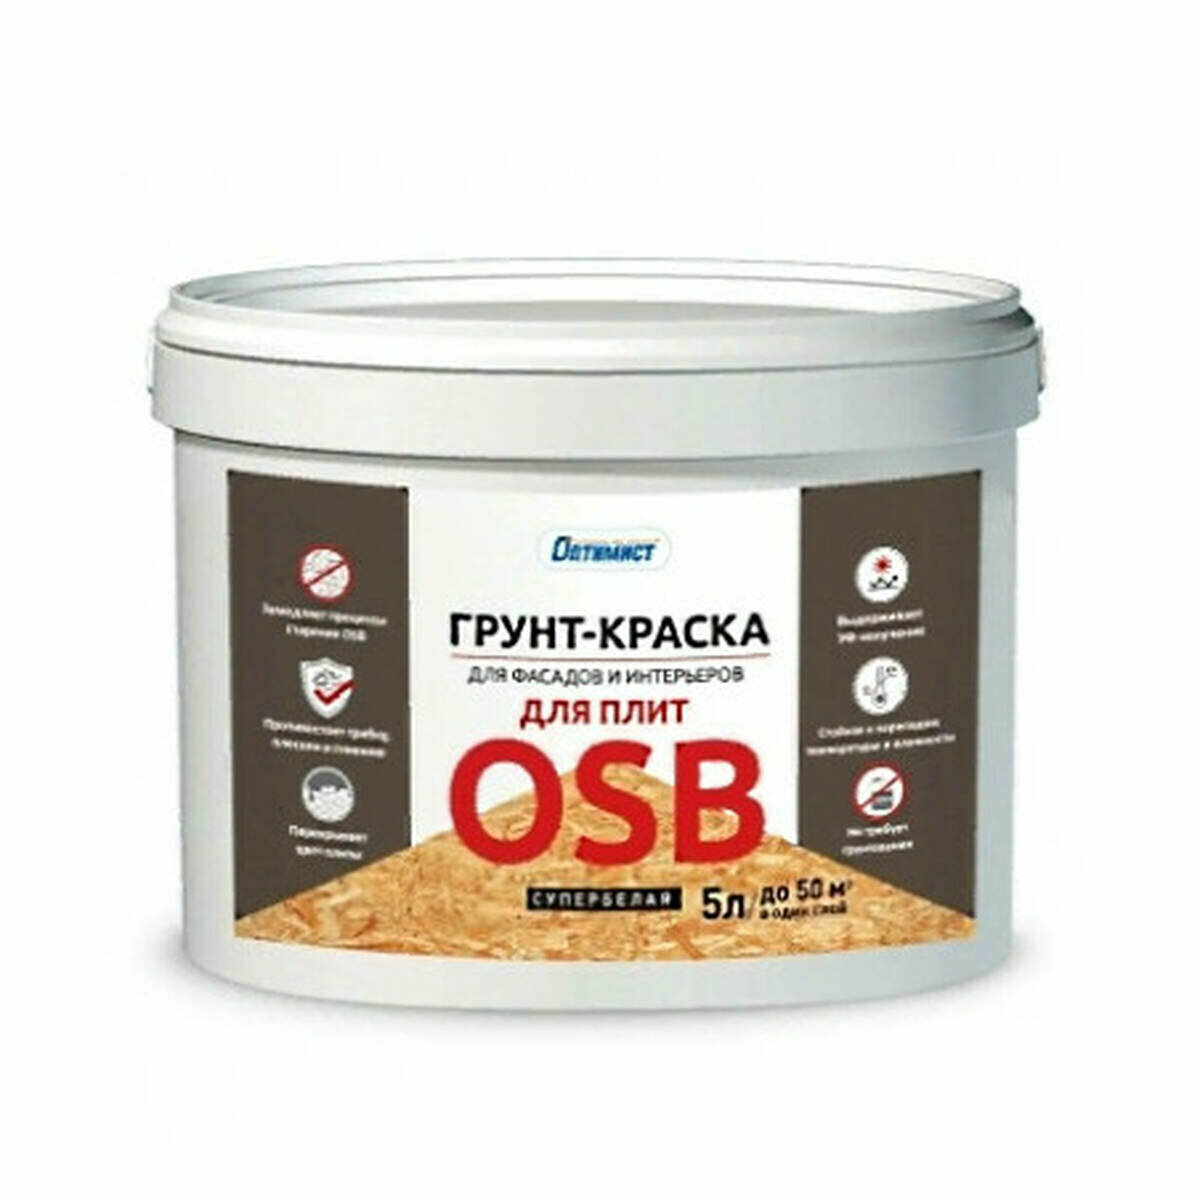 Грунт-краска F321 оптимист для плит OSB 5л OPG045